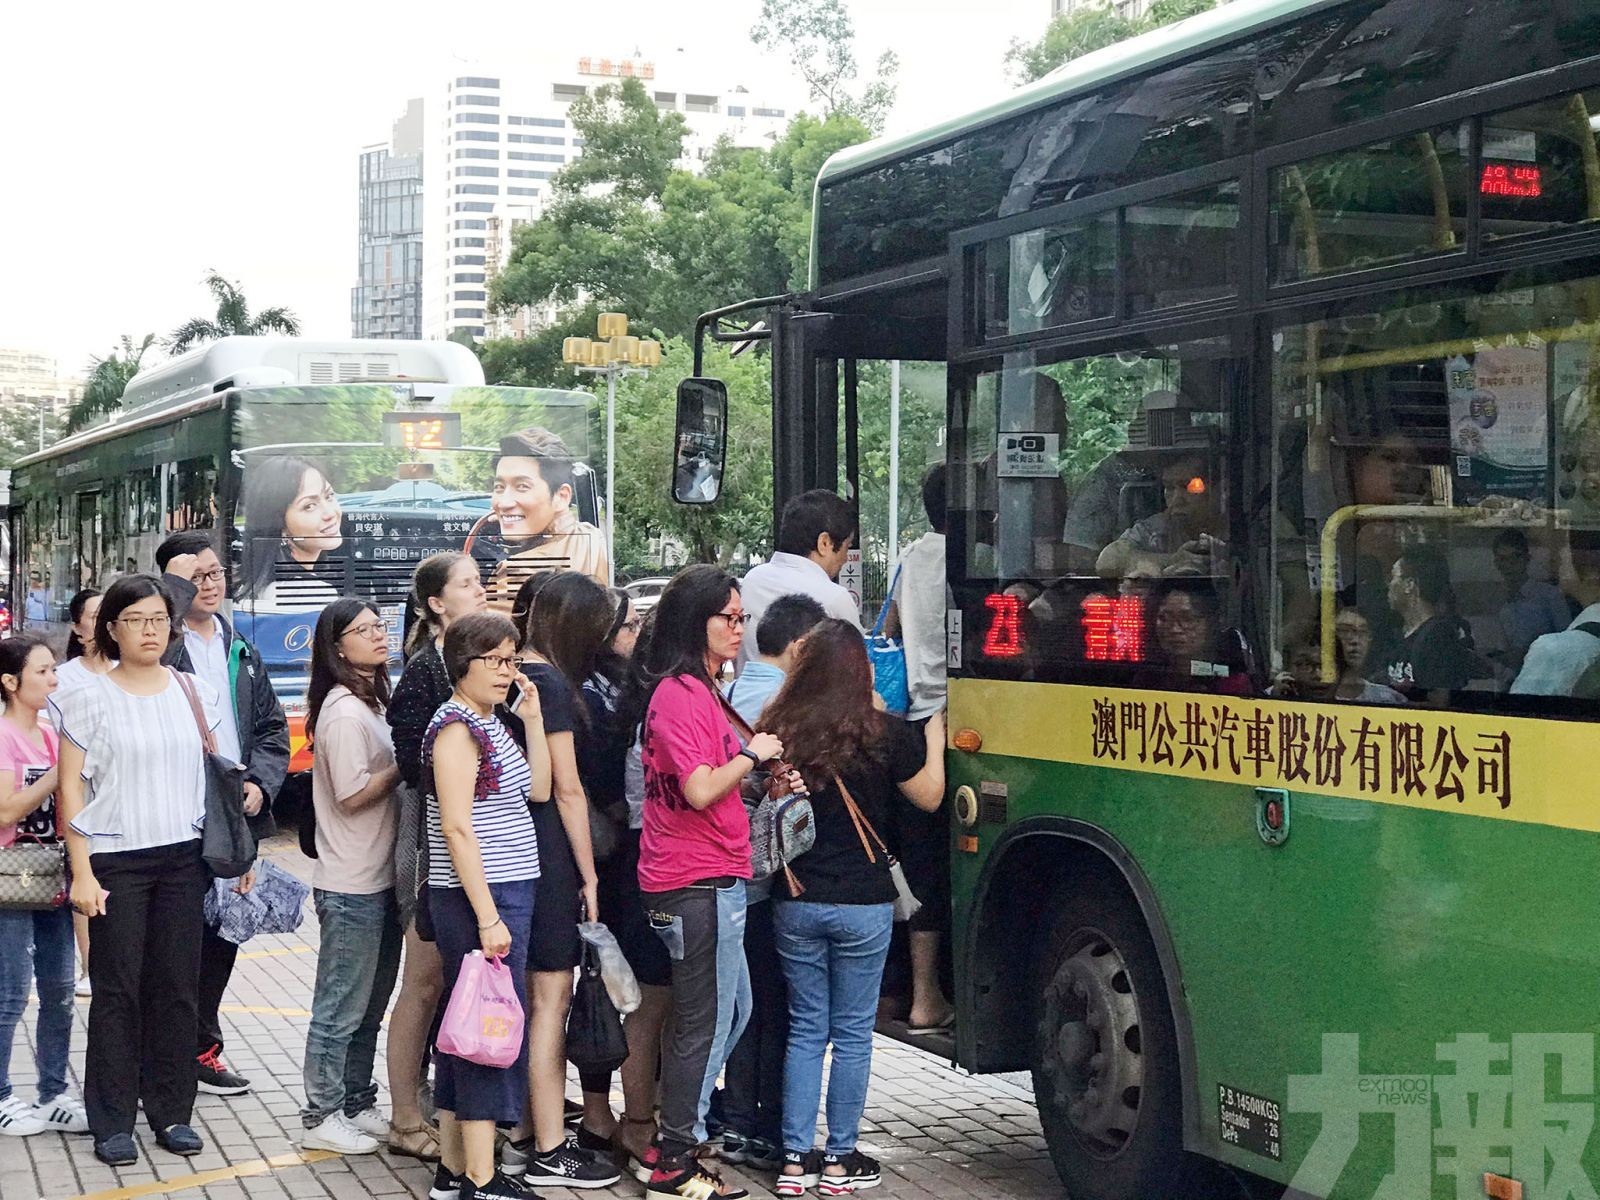 去年巴士載客2.15億人次 交通局推廣市民公交出行